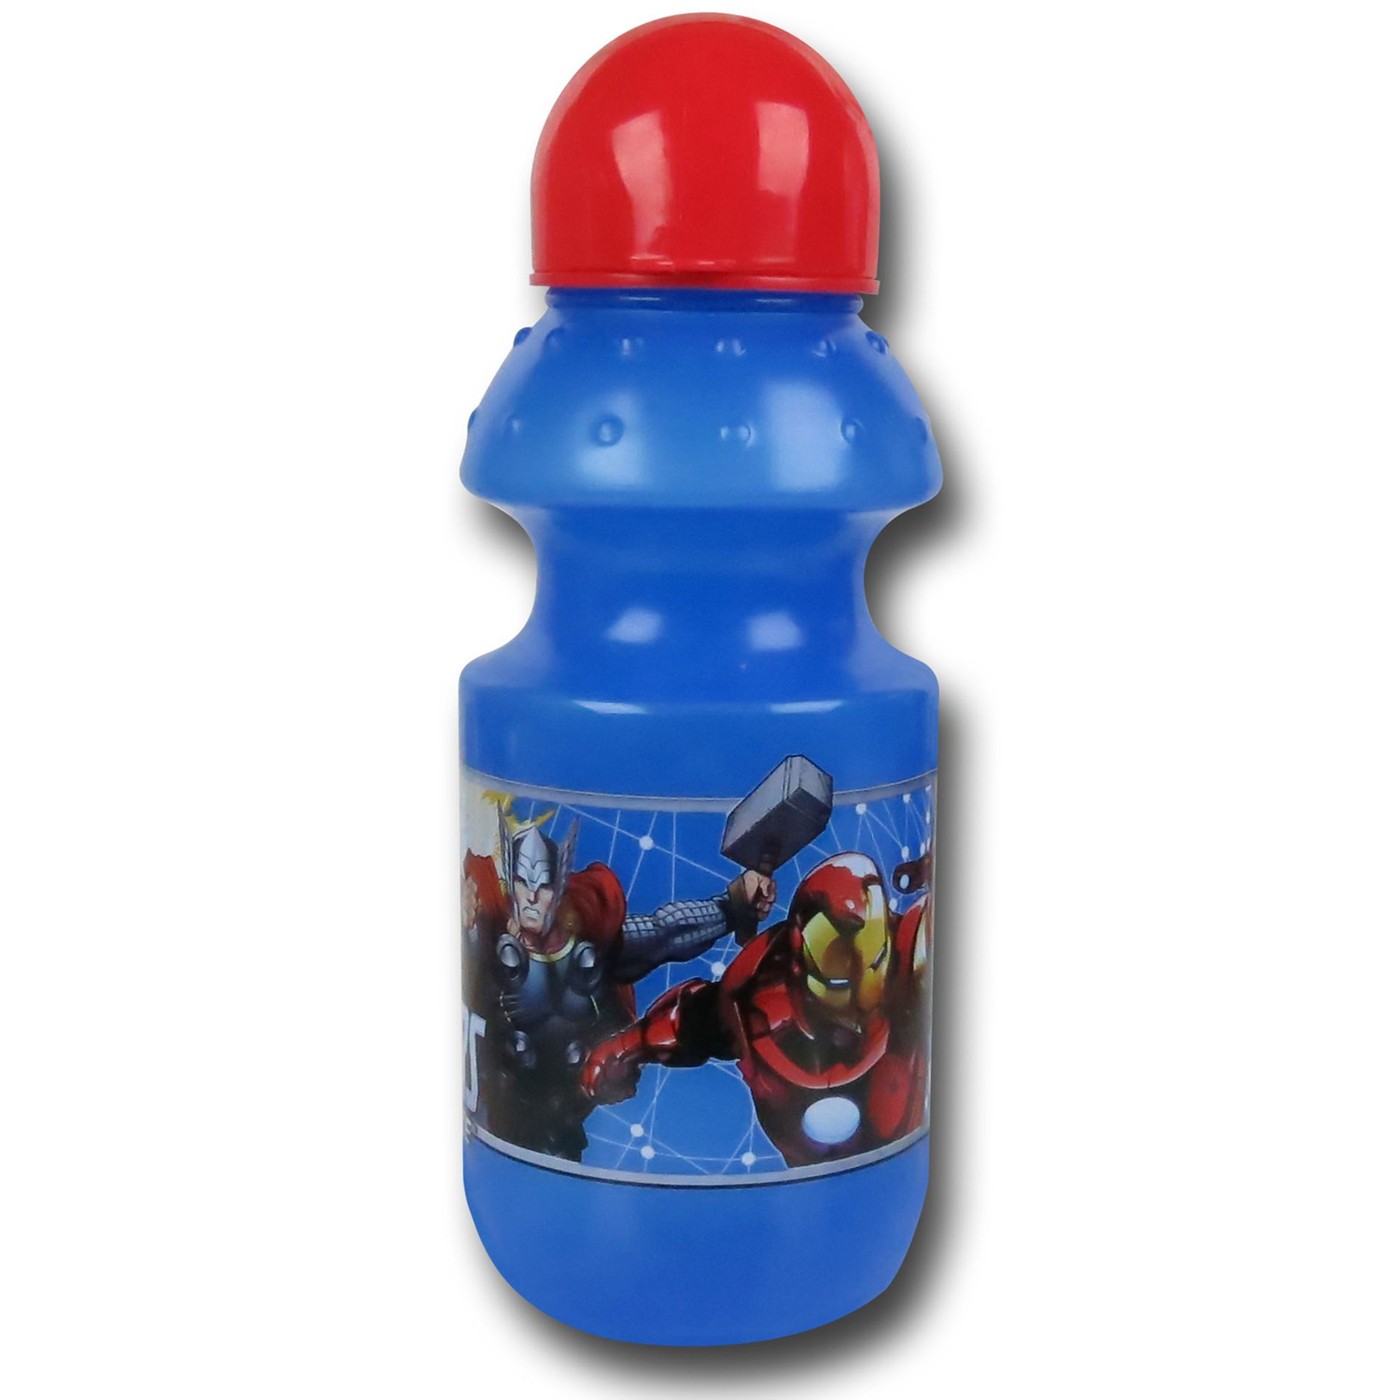 Avengers Sports Water Bottle